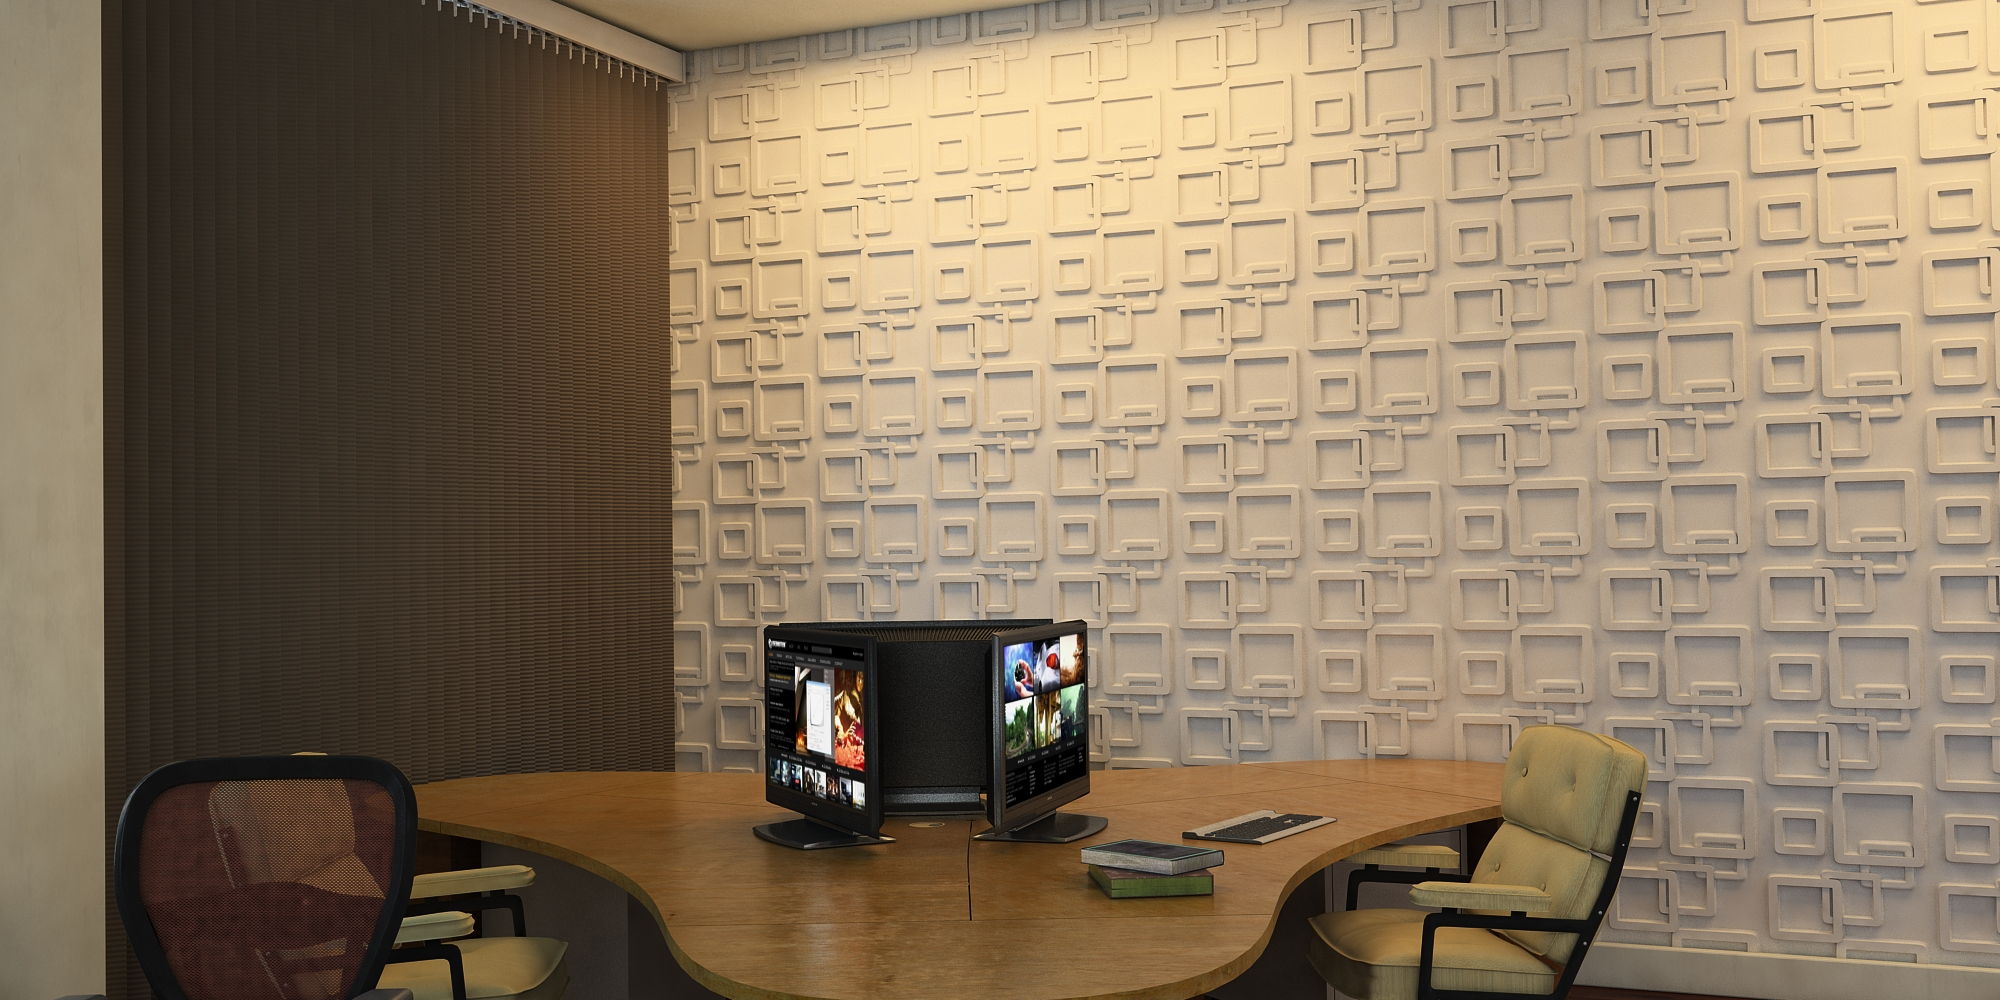 Гипсовые 3d панели для внутренней отделки стен: фото, монтаж своими руками